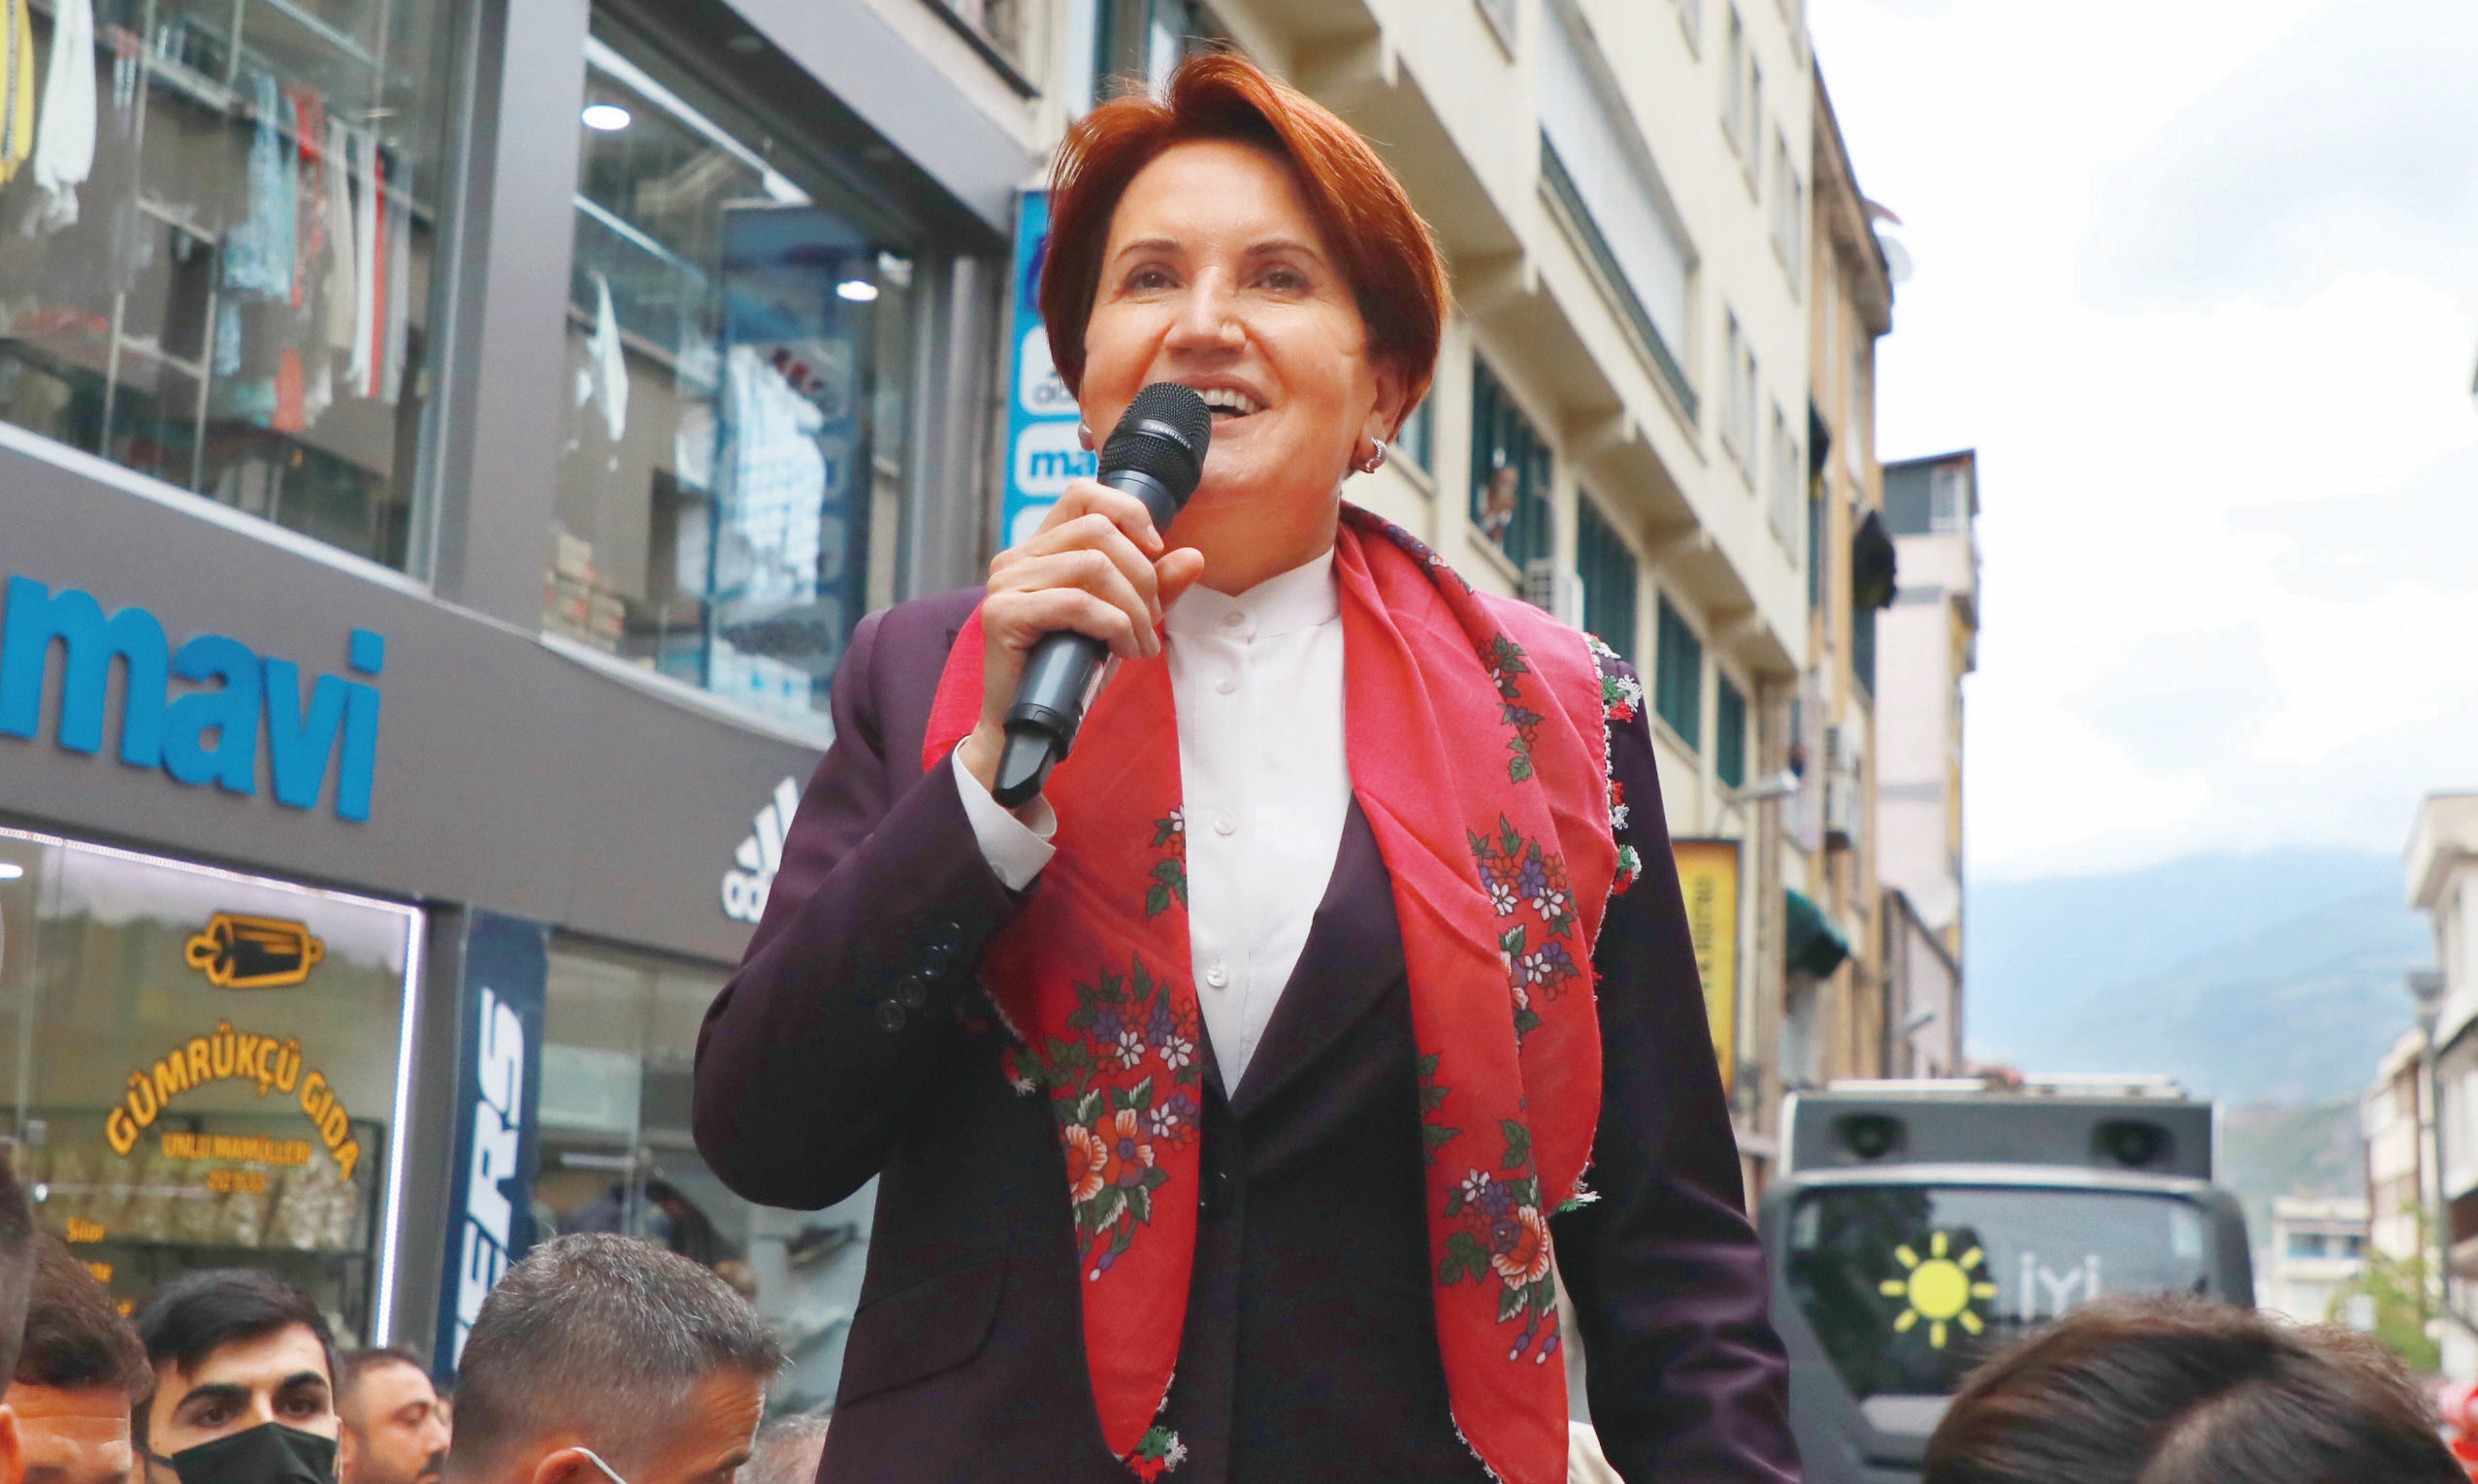 15 Temmuz darbesi öncesi, “Ben Başbakan olacağım” diye ortaya atılan İYİ Parti genel başkanı Meral Akşener, yine sahnede. Akşener, bu kez “Ben Başbakan adayıyım” dedi.